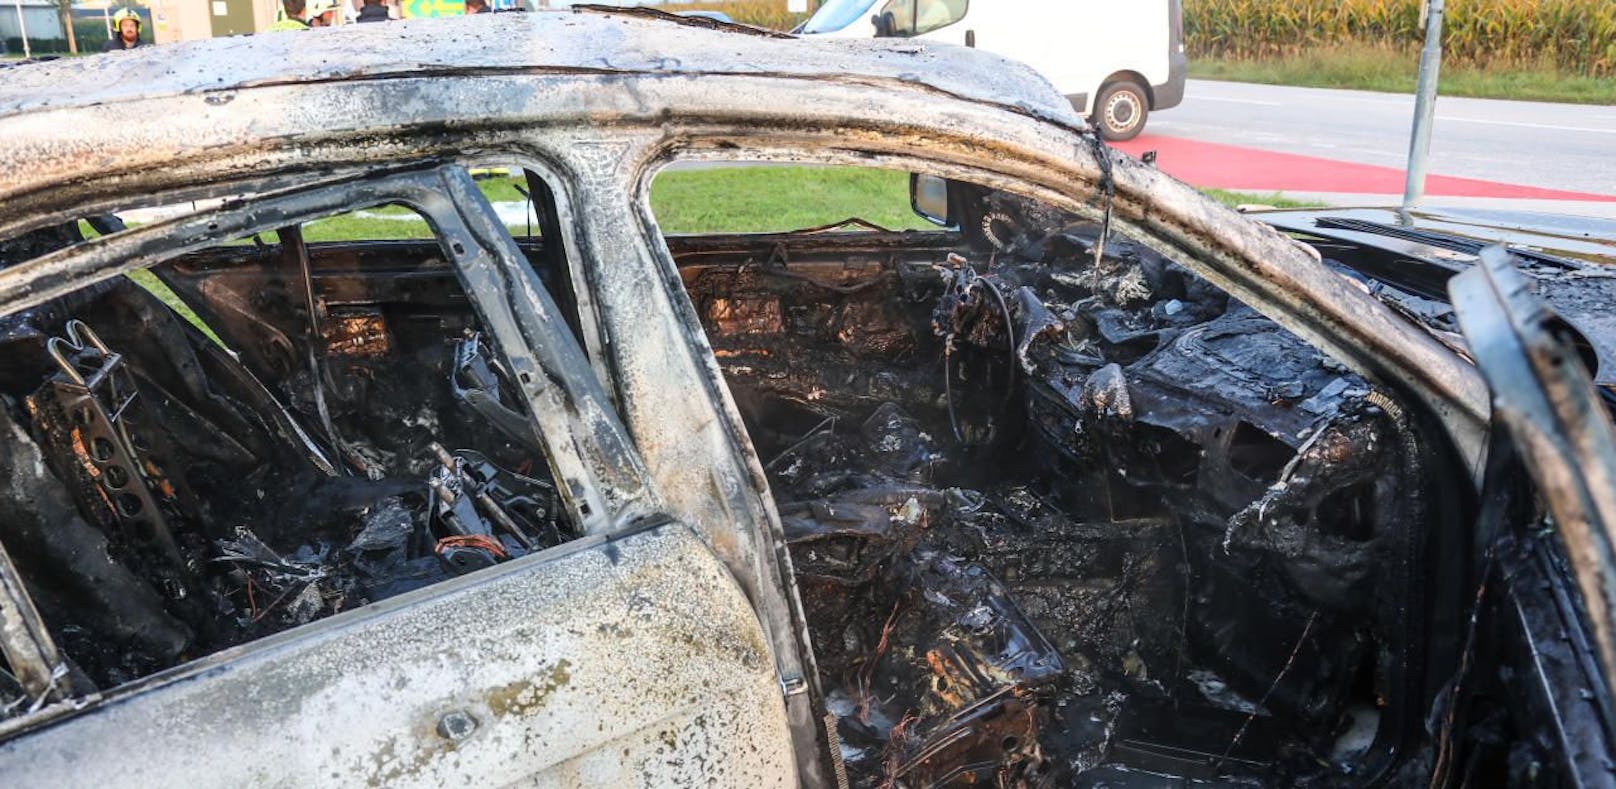 Auto brannte auf Parkplatz völlig aus